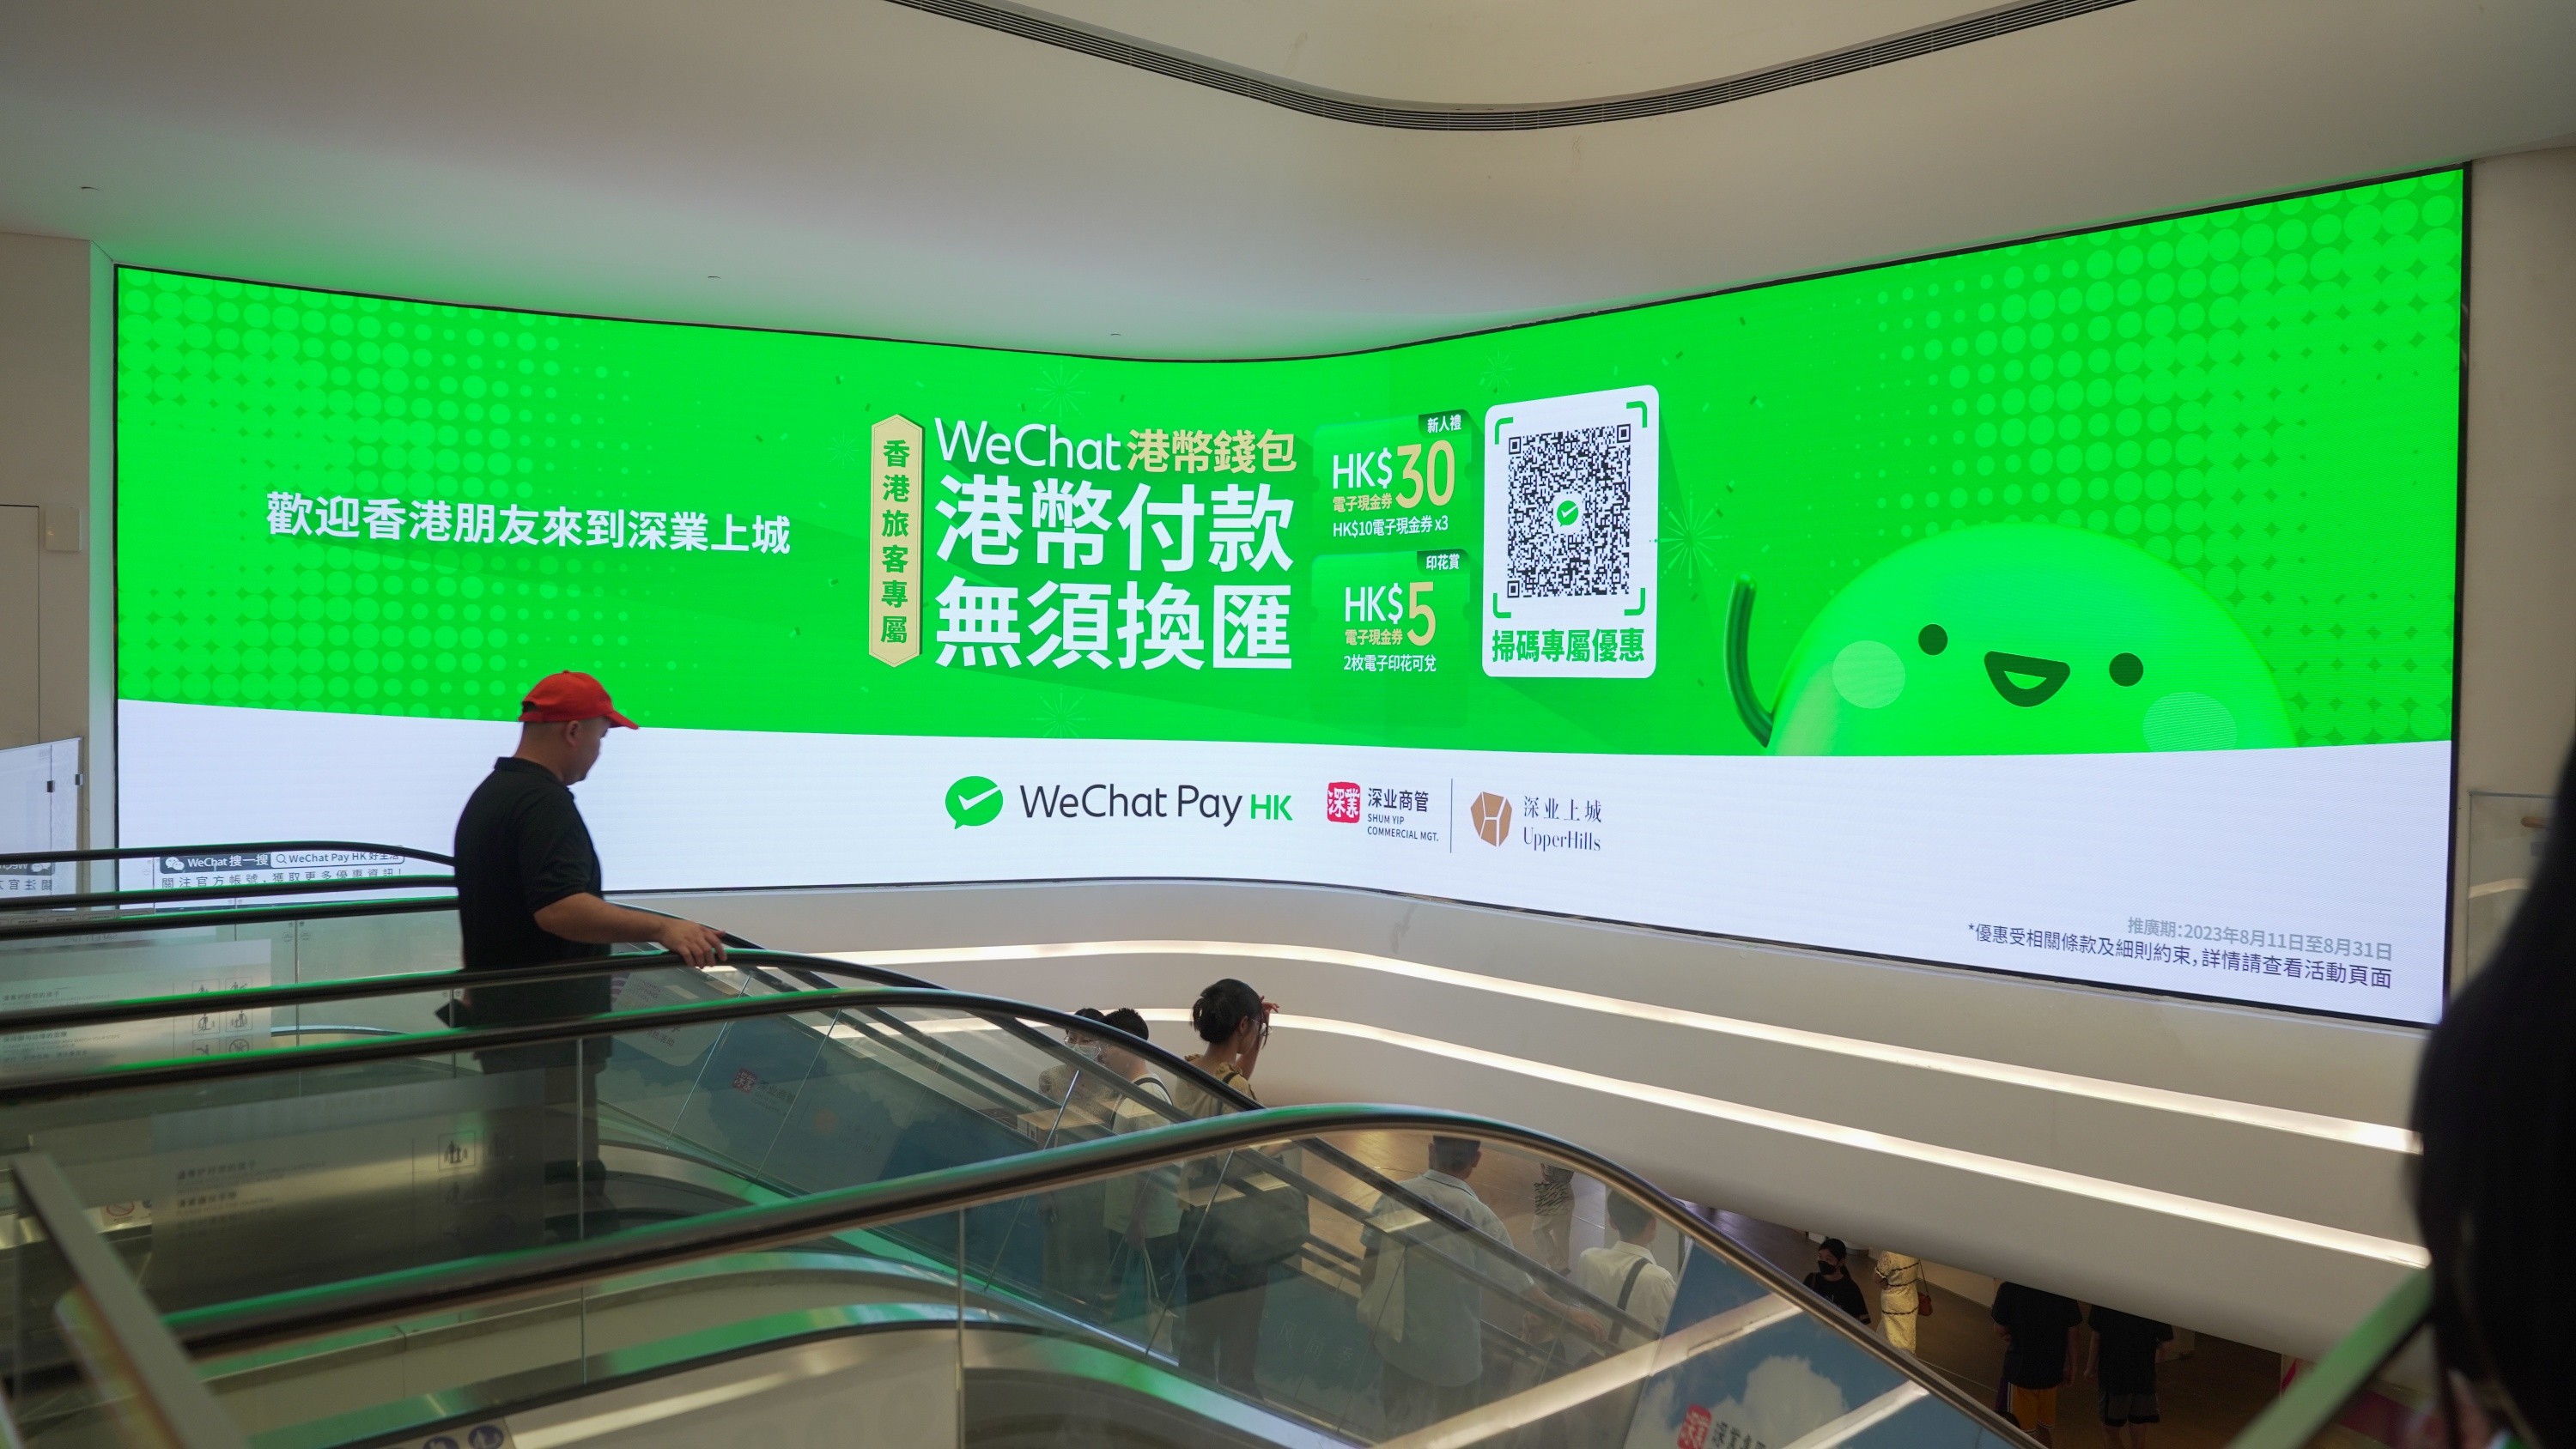 微信香港錢包覆蓋超千萬家用戶， 春節期間消費筆數增近5倍